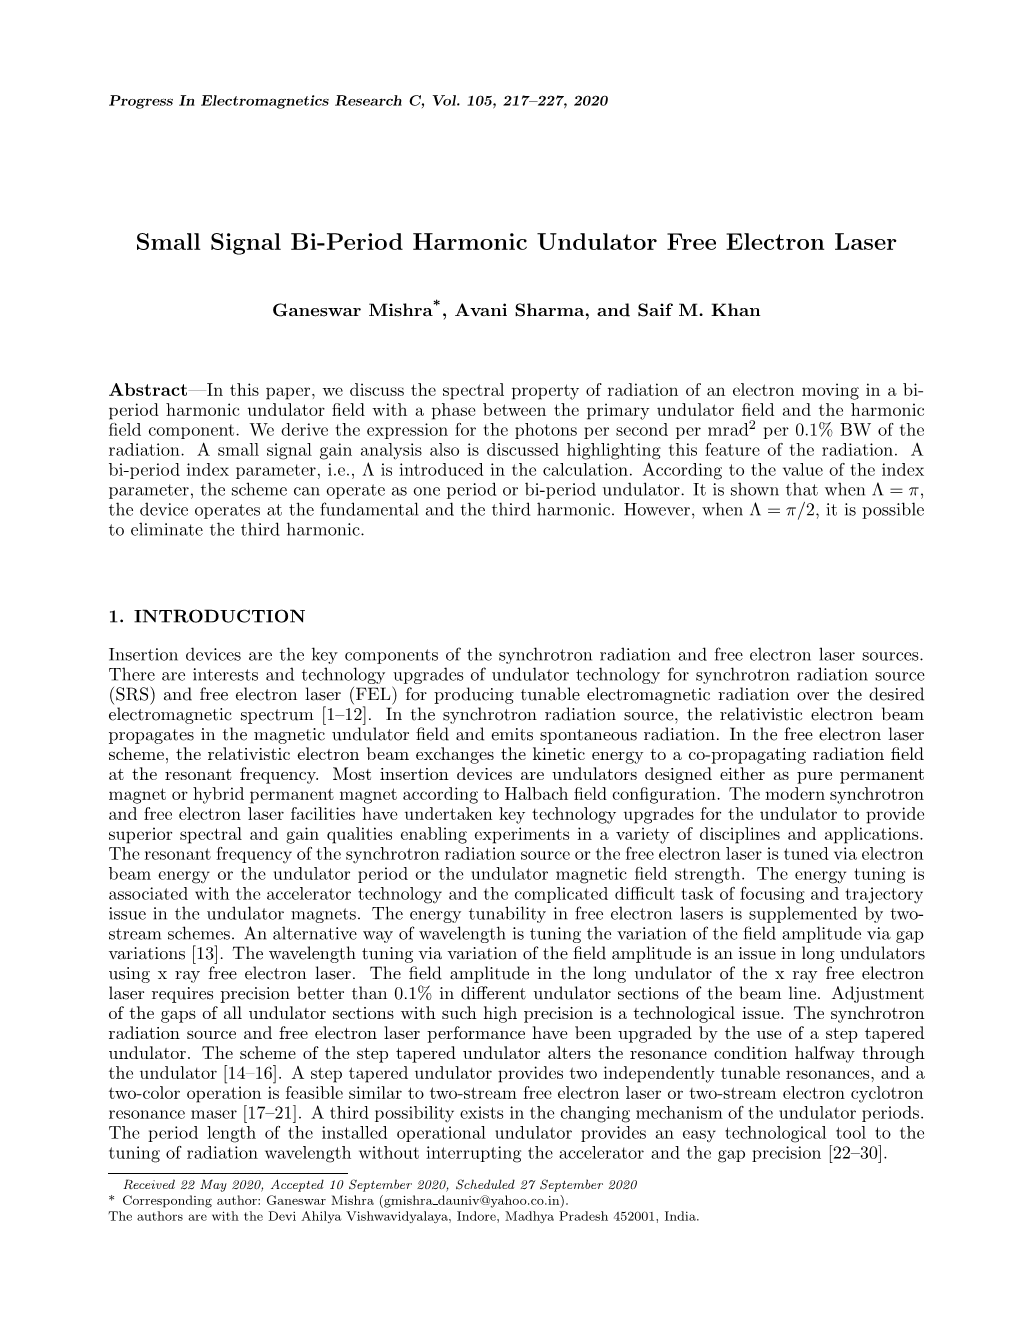 Small Signal Bi-Period Harmonic Undulator Free Electron Laser